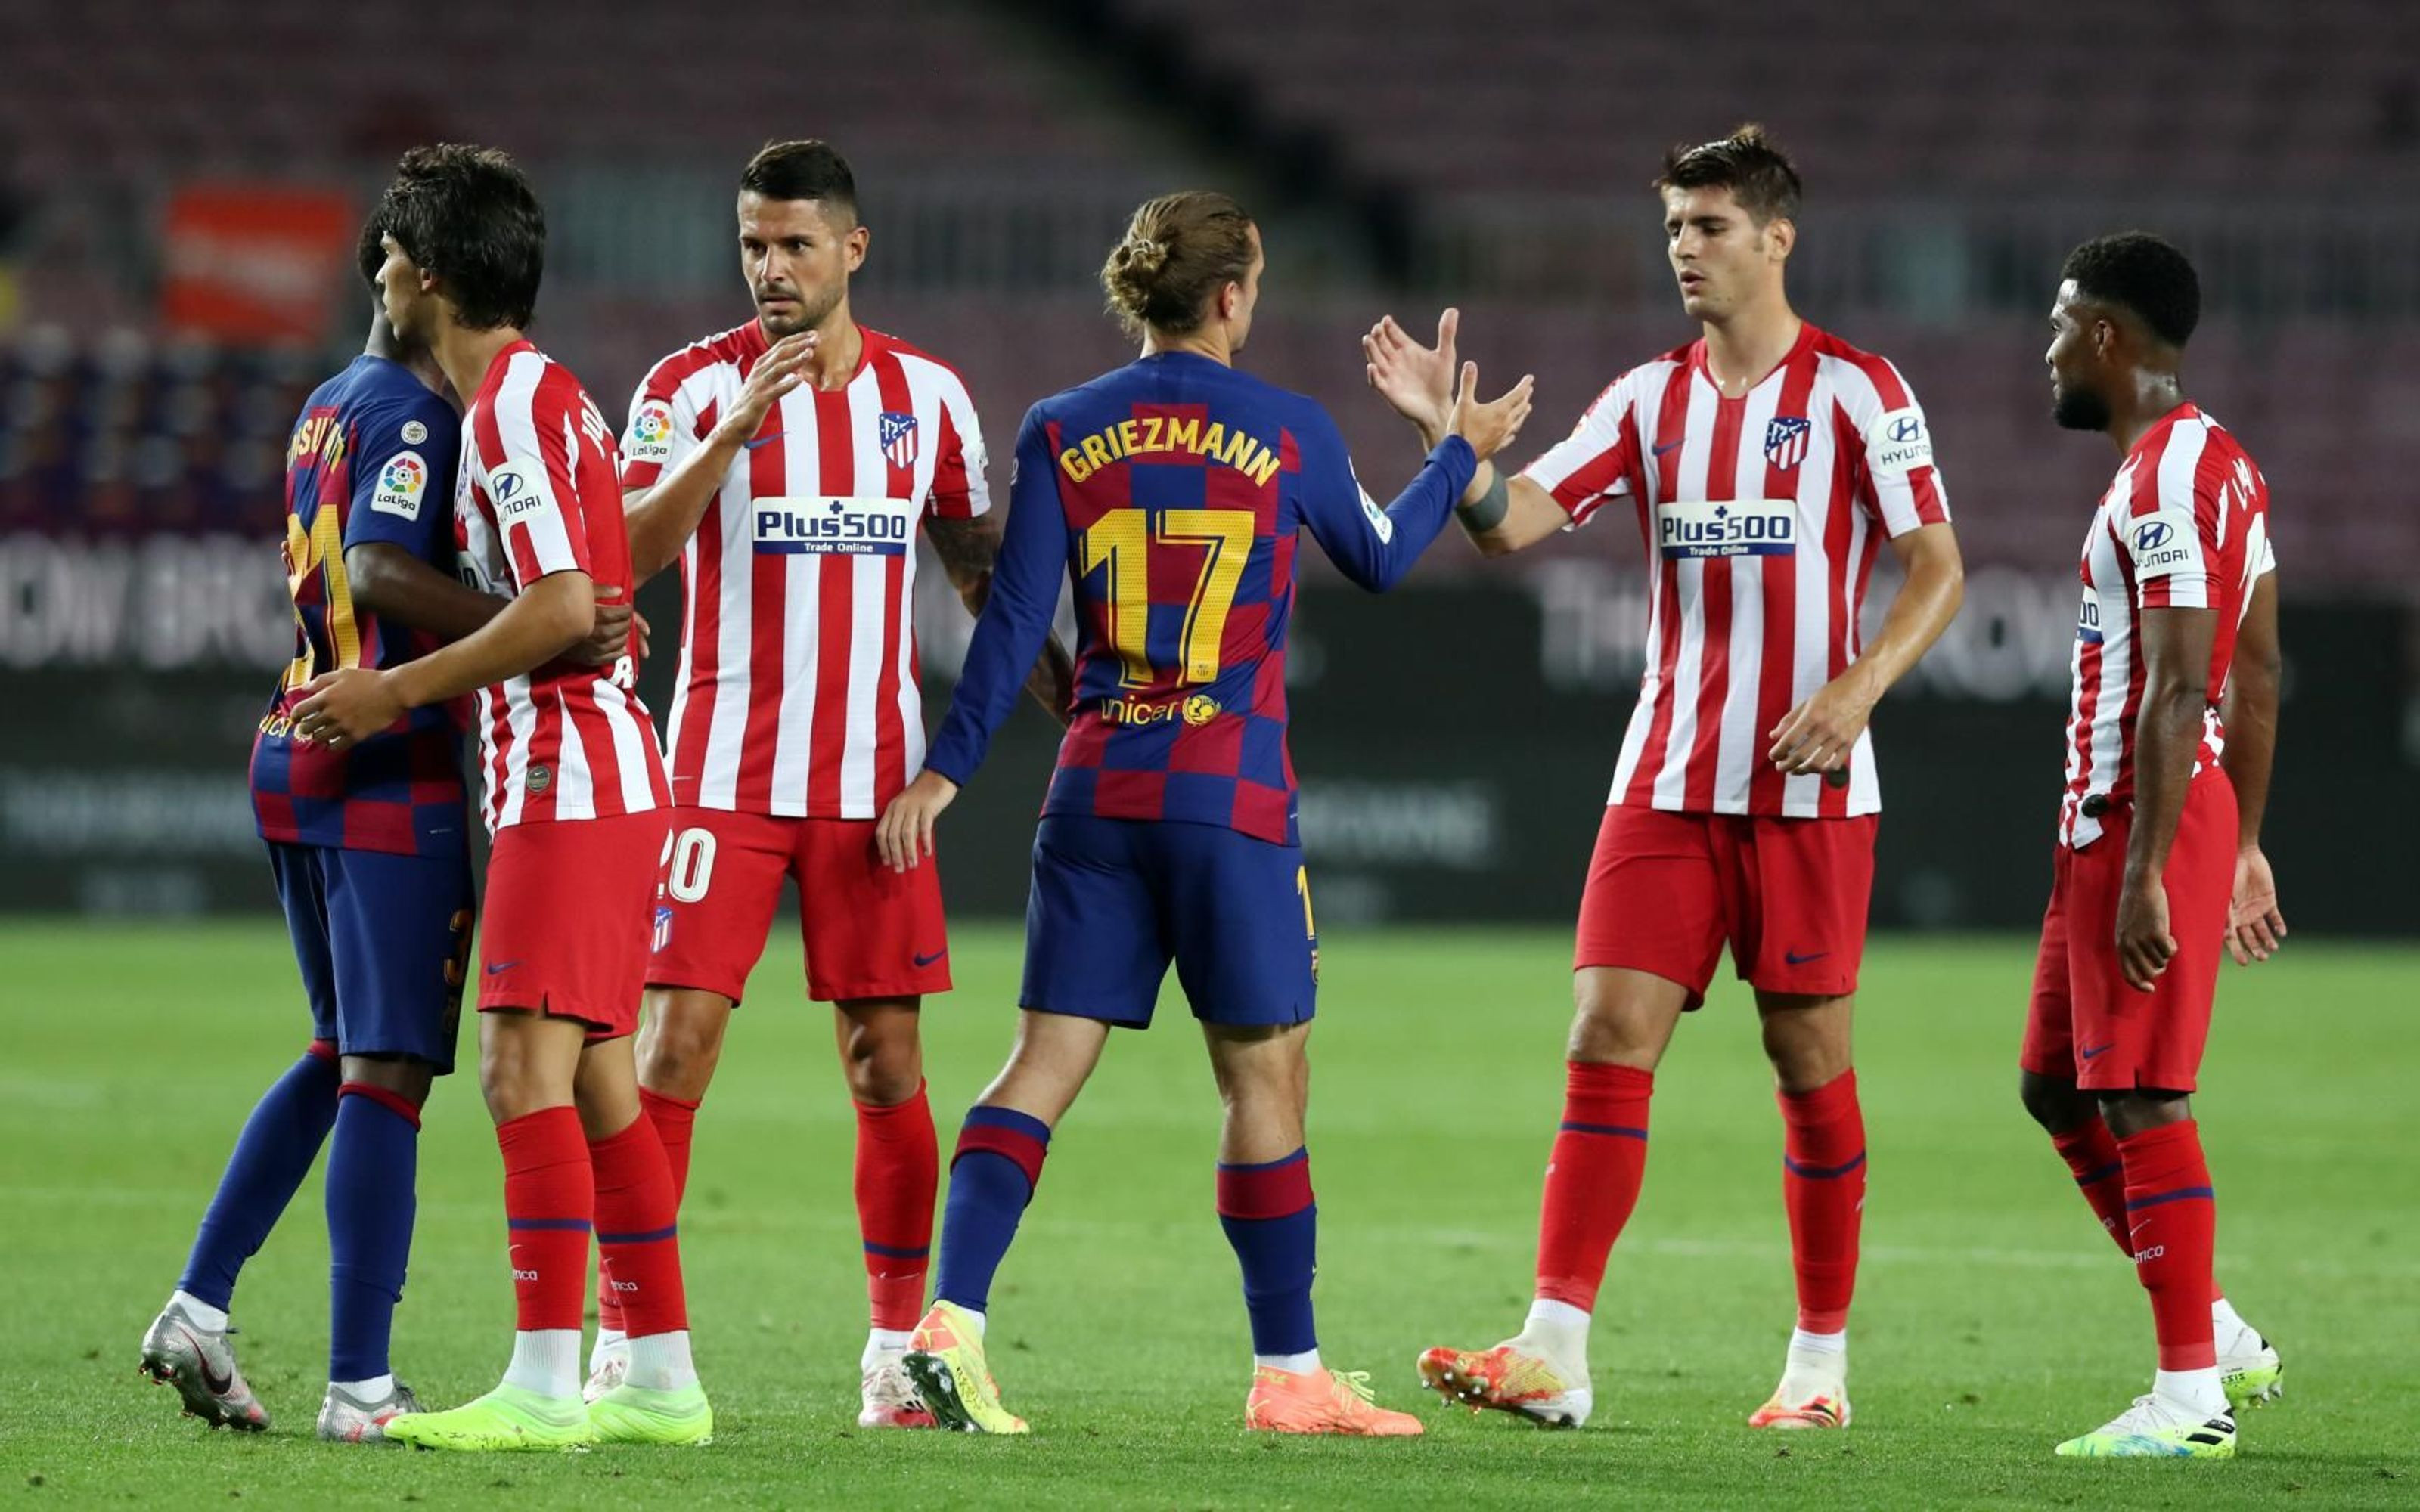 Griezmann saludando a sus excompañeros del Atlético de Madrid / FC Barcelona